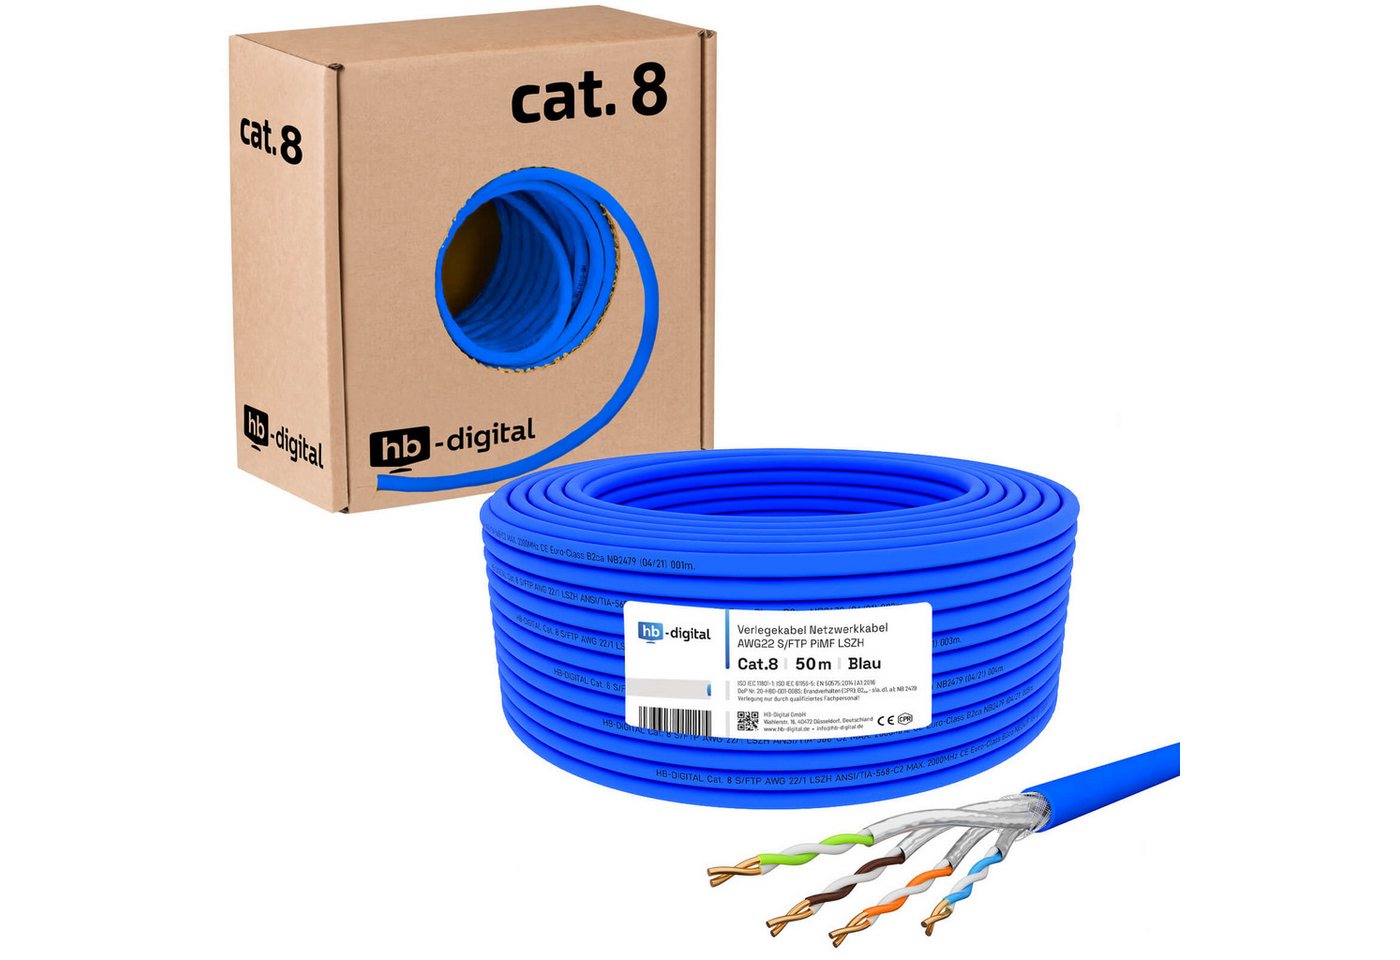 HB-DIGITAL Verlegekabel,Netzwerkkabel CAT.8 Blau 50m Netzwerkkabel, Netzwerkstecker, (5000 cm), Brandschutzklasse BauPVO: B2ca s1a d1 a1 von HB-DIGITAL